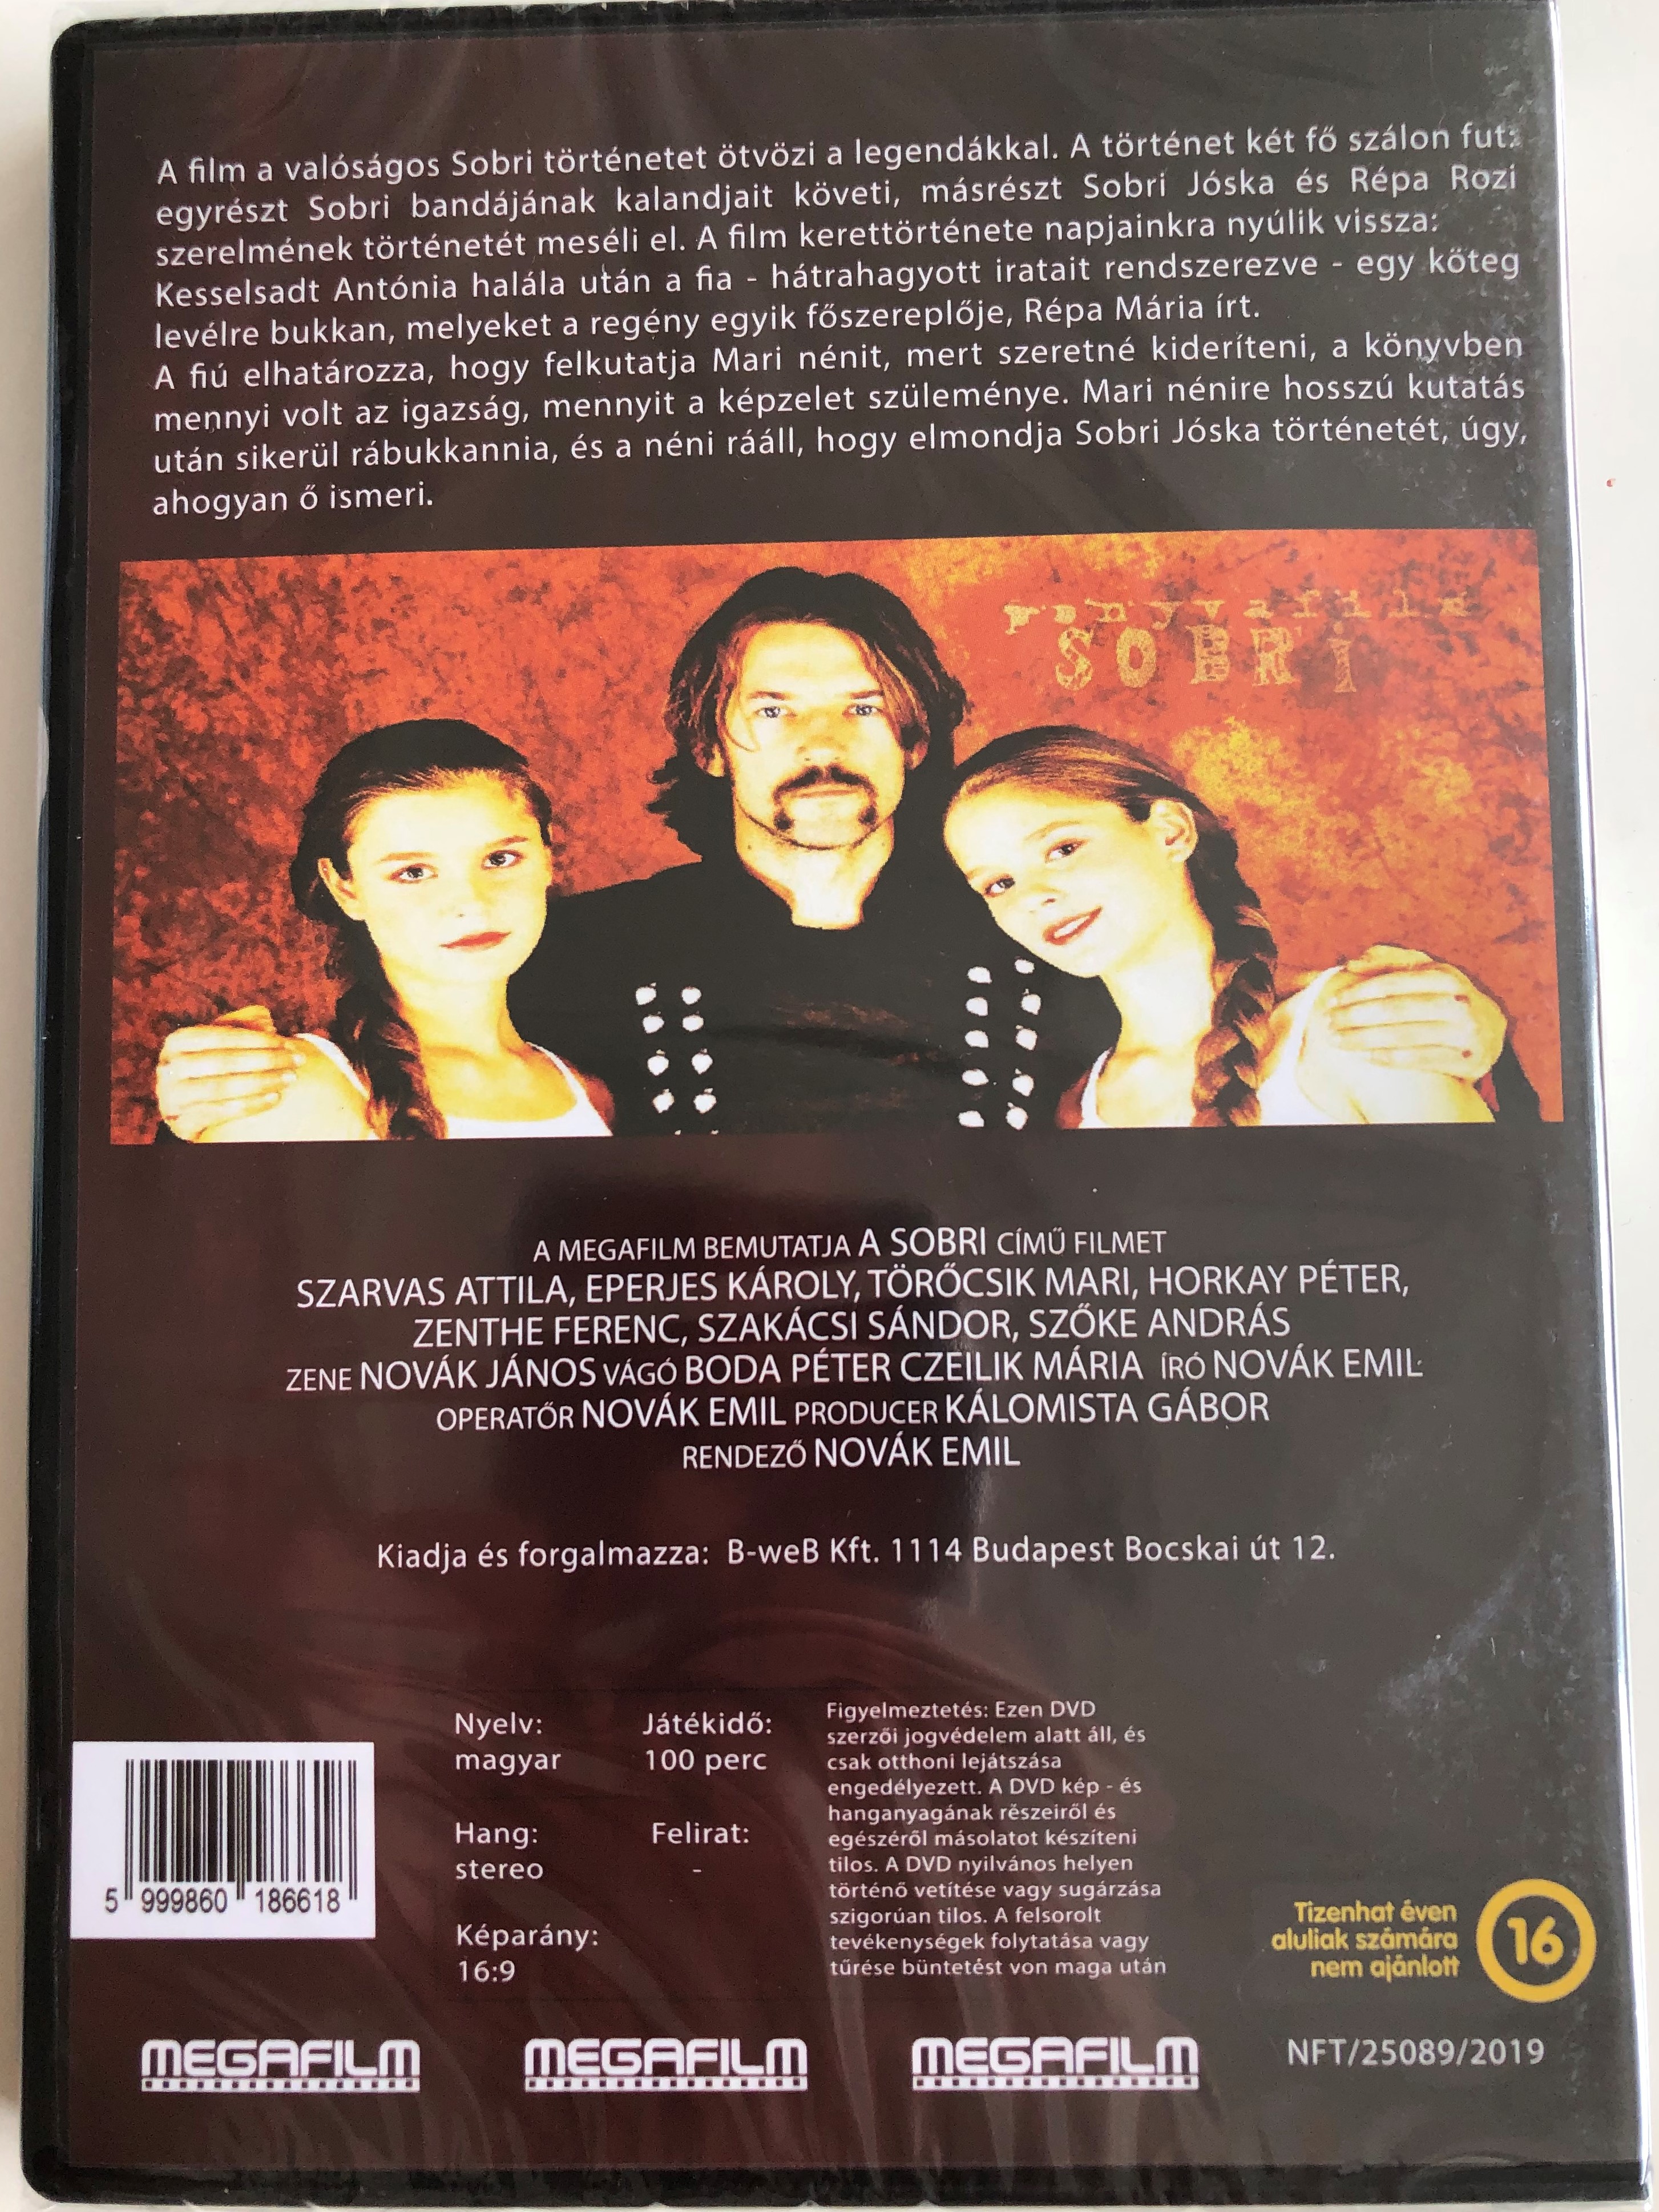 sobri-dvd-2002-egy-bakonyi-bety-r-legend-ja-directed-by-nov-k-emil-2.jpg